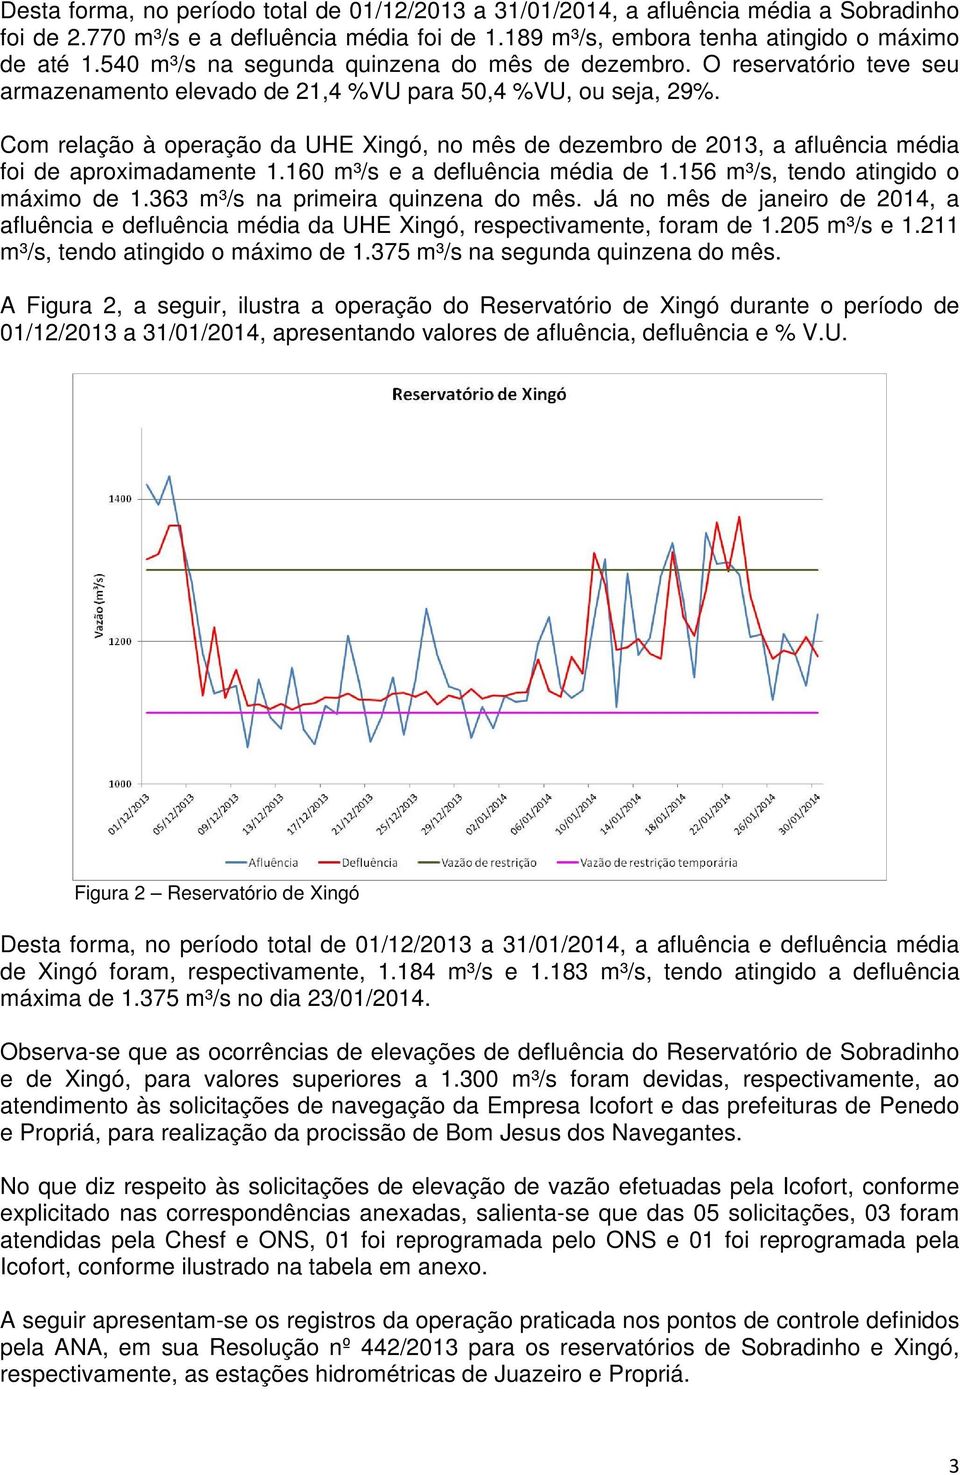 Com relação à operação da UHE Xingó, no mês de dezembro de 2013, a afluência média foi de aproximadamente 1.160 m³/s e a defluência média de 1.156 m³/s, tendo atingido o máximo de 1.